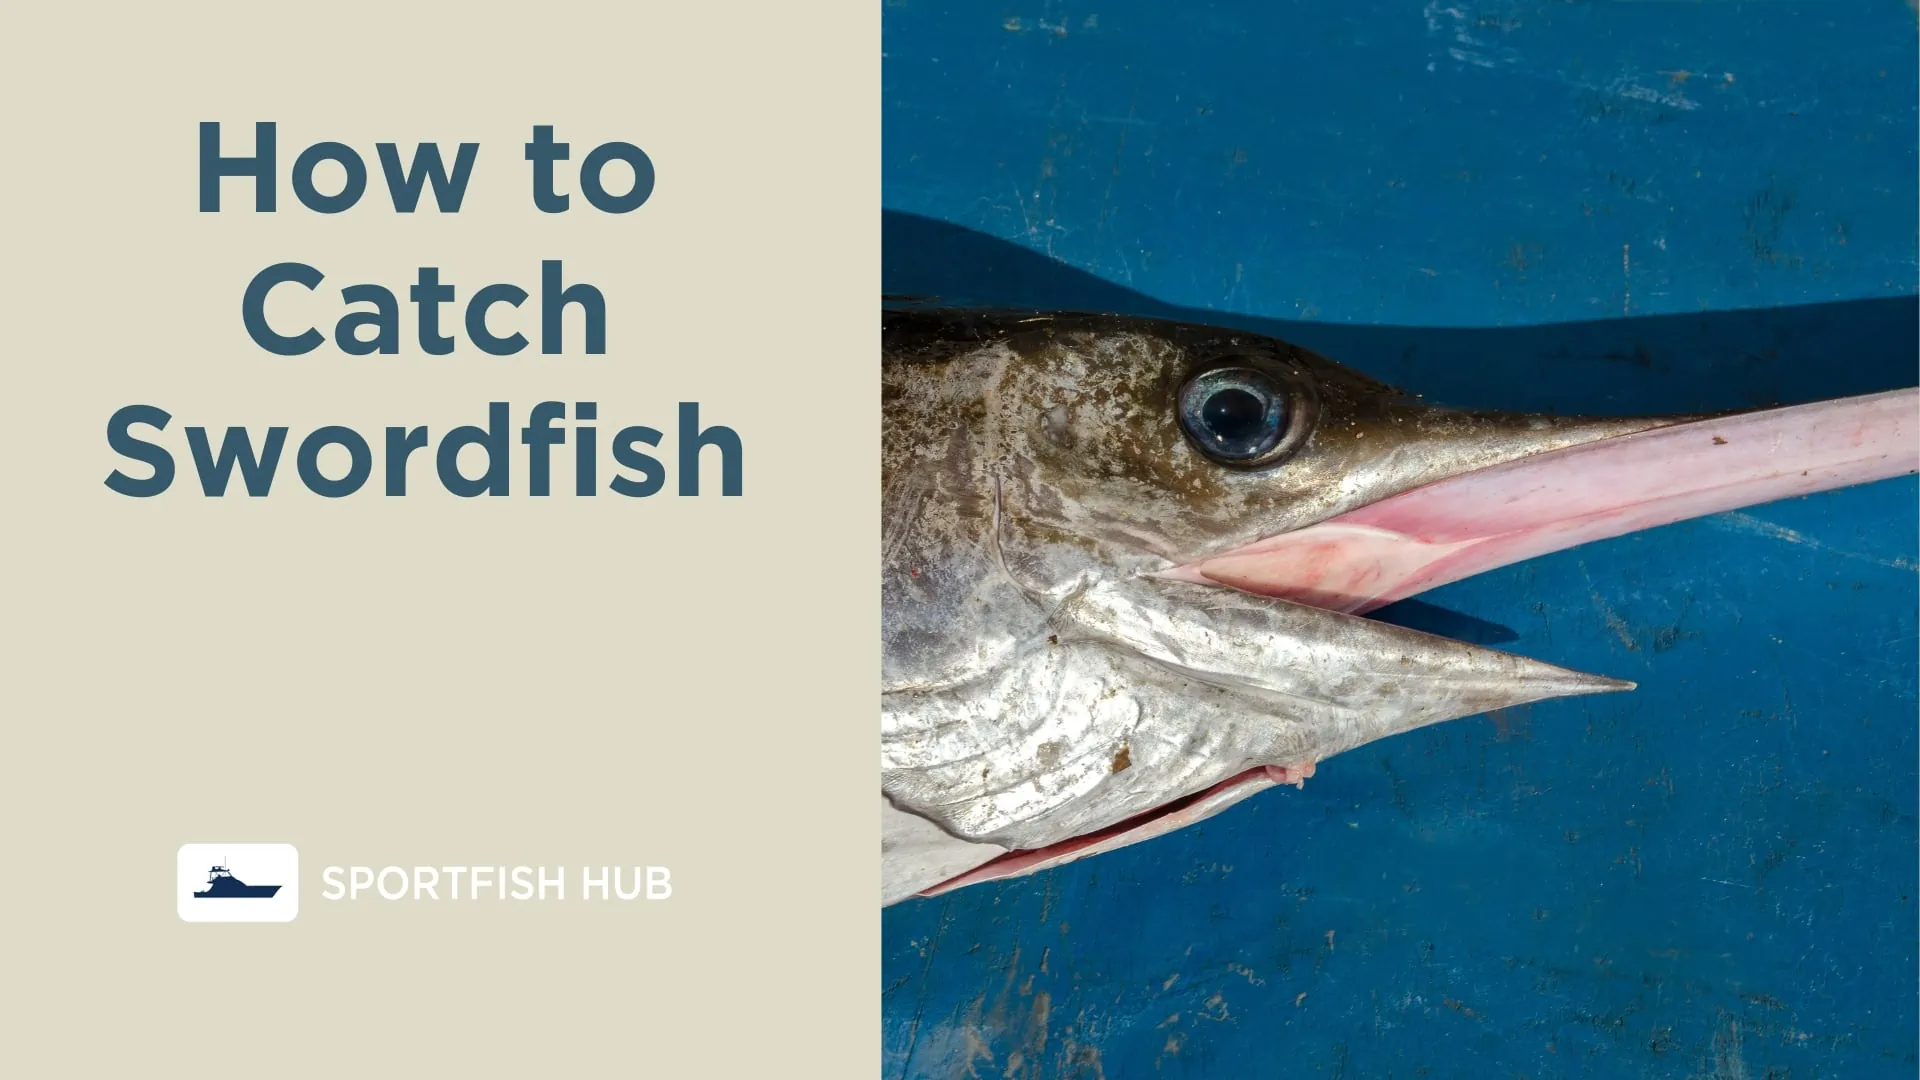 How to Catch Swordfish